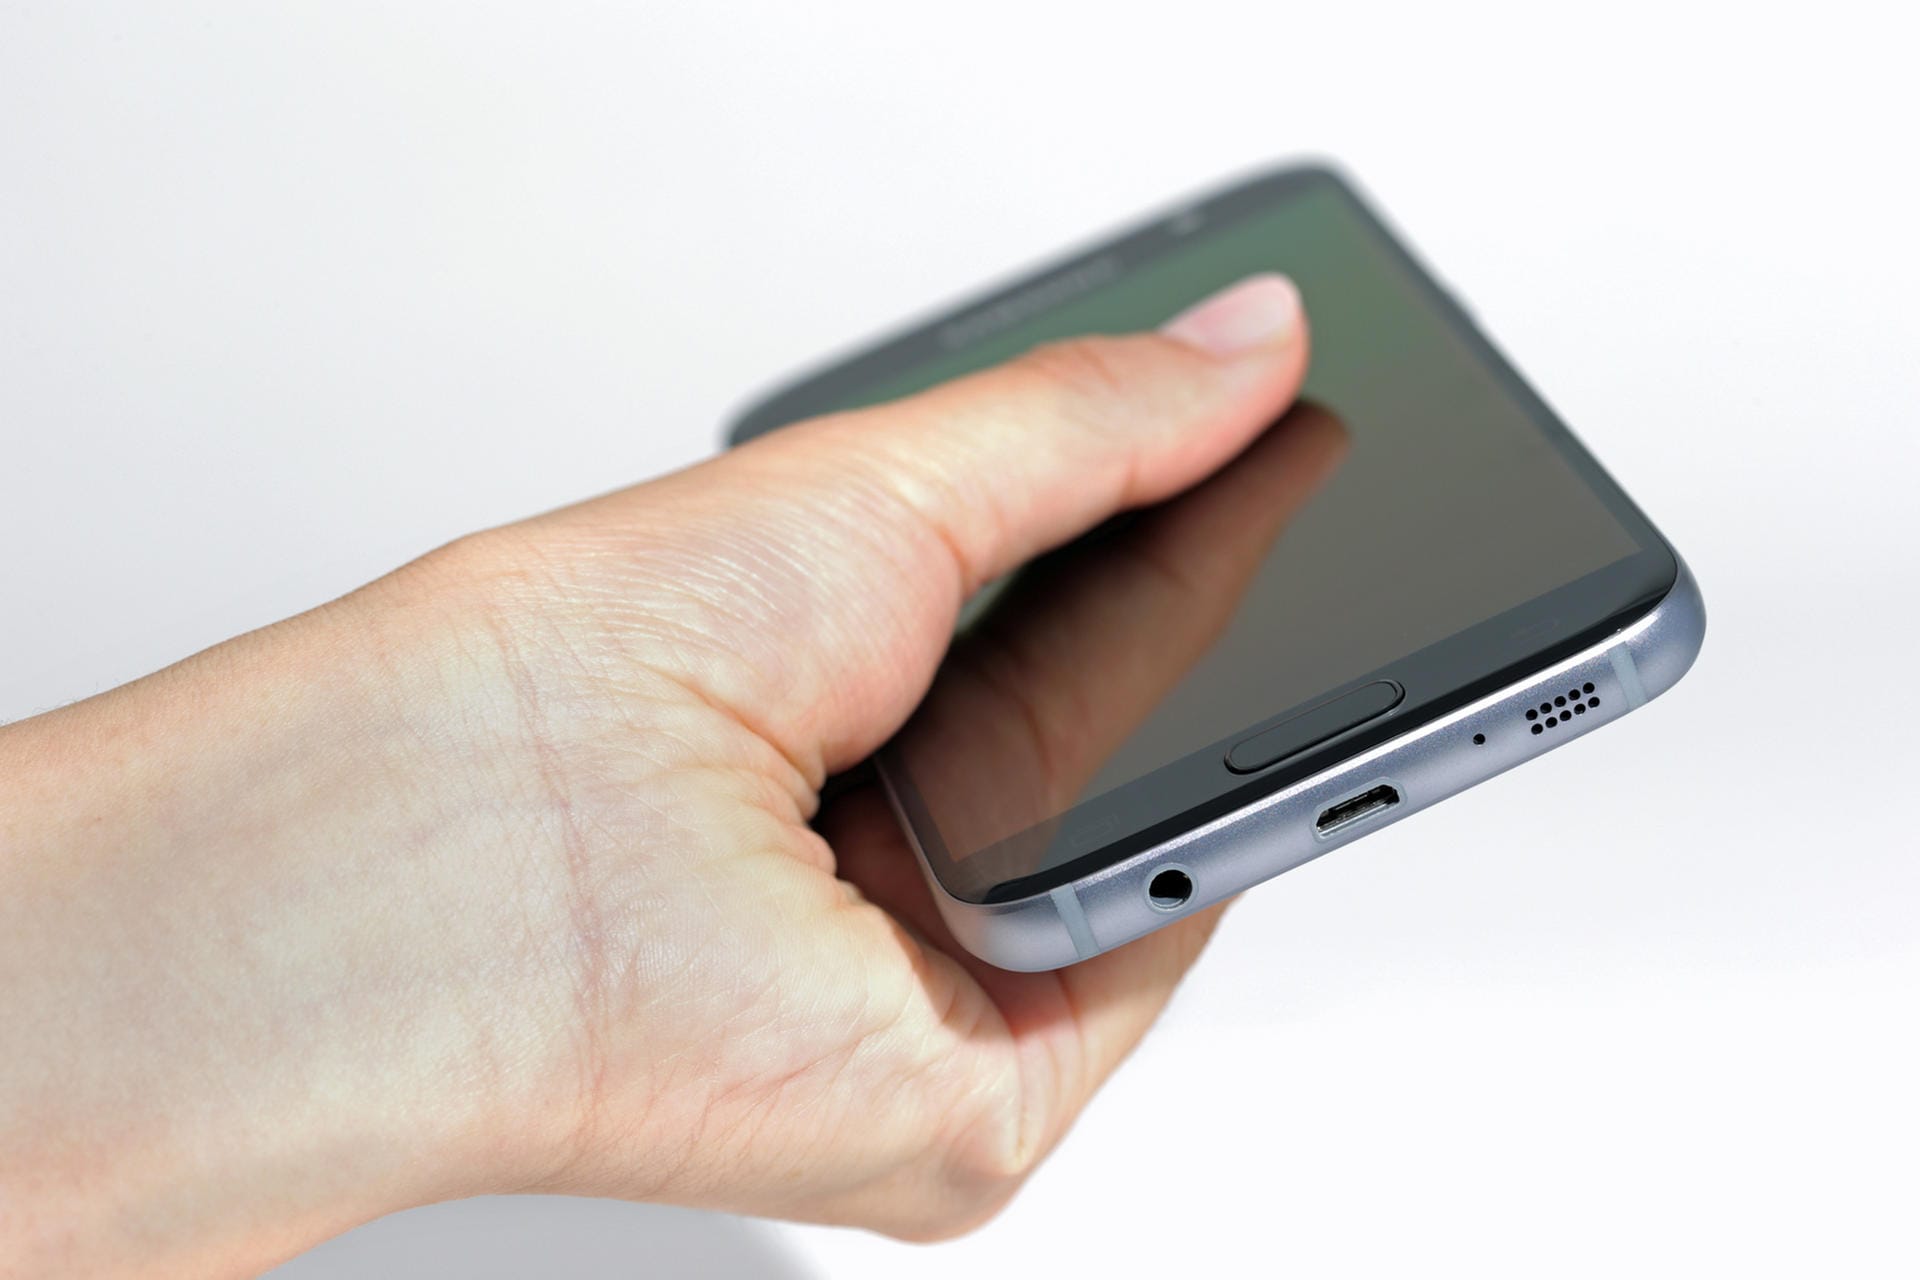 Das Galaxy S7 greift das Design seines Vorgängers auf. Das Gehäuse ist an den Ecken etwas mehr abgerundet. Der Homebutton mit dem Fingerabdruckscanner ist etwas flacher.